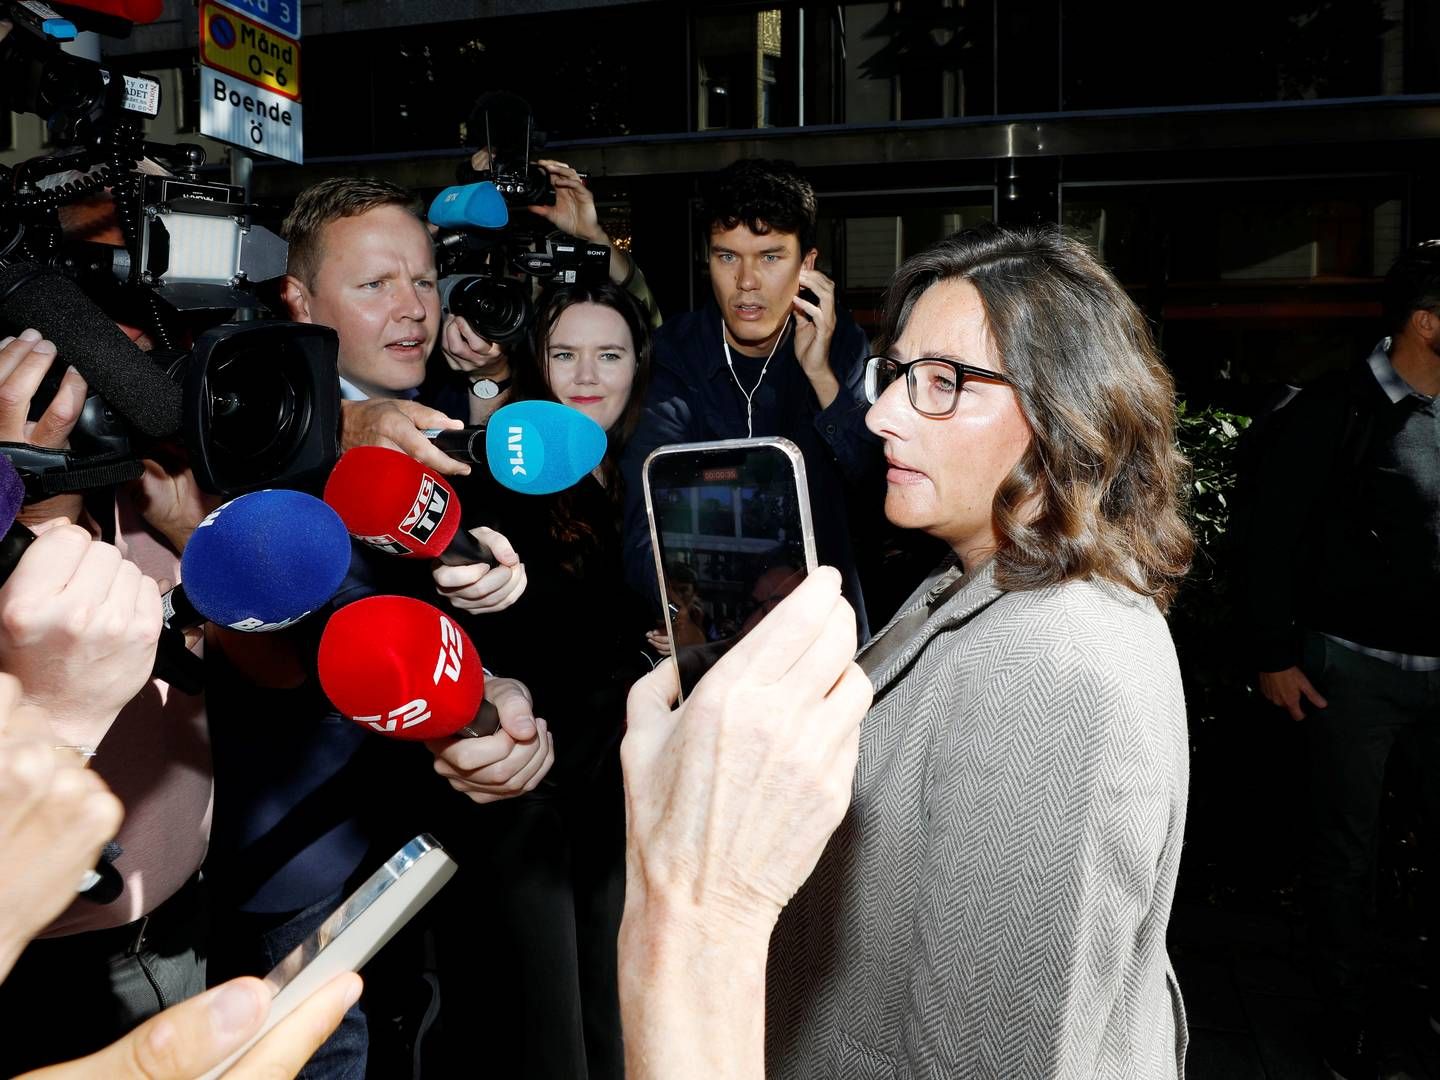 SAS' forhandlingsleder, Marianne Hernæs, oplyser, at det er ved at være sidste udkald for en aftale. | Foto: Ali Lorestani/TT/Ritzau Scanpix